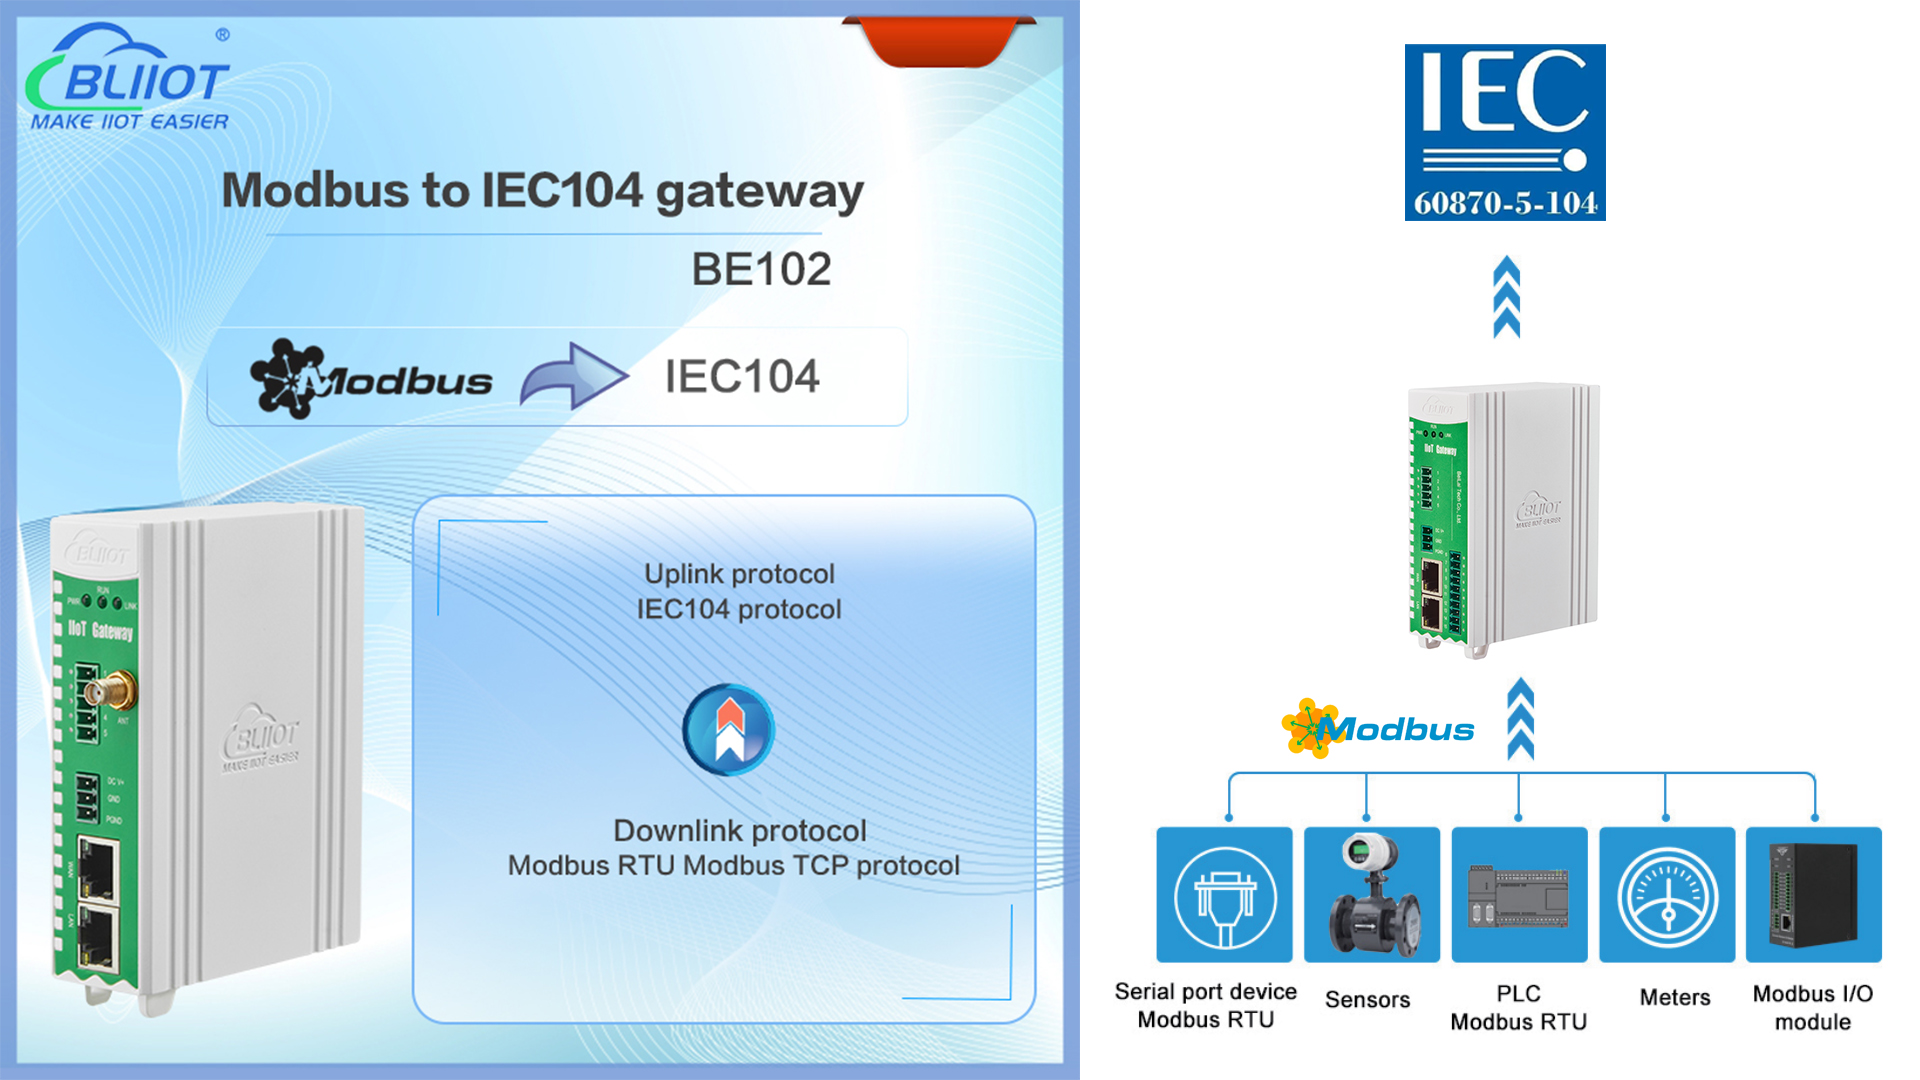 BLIIoT|Nueva versión BE102 Modbus a IEC104 Gateway en diversas aplicaciones industriales de IoT